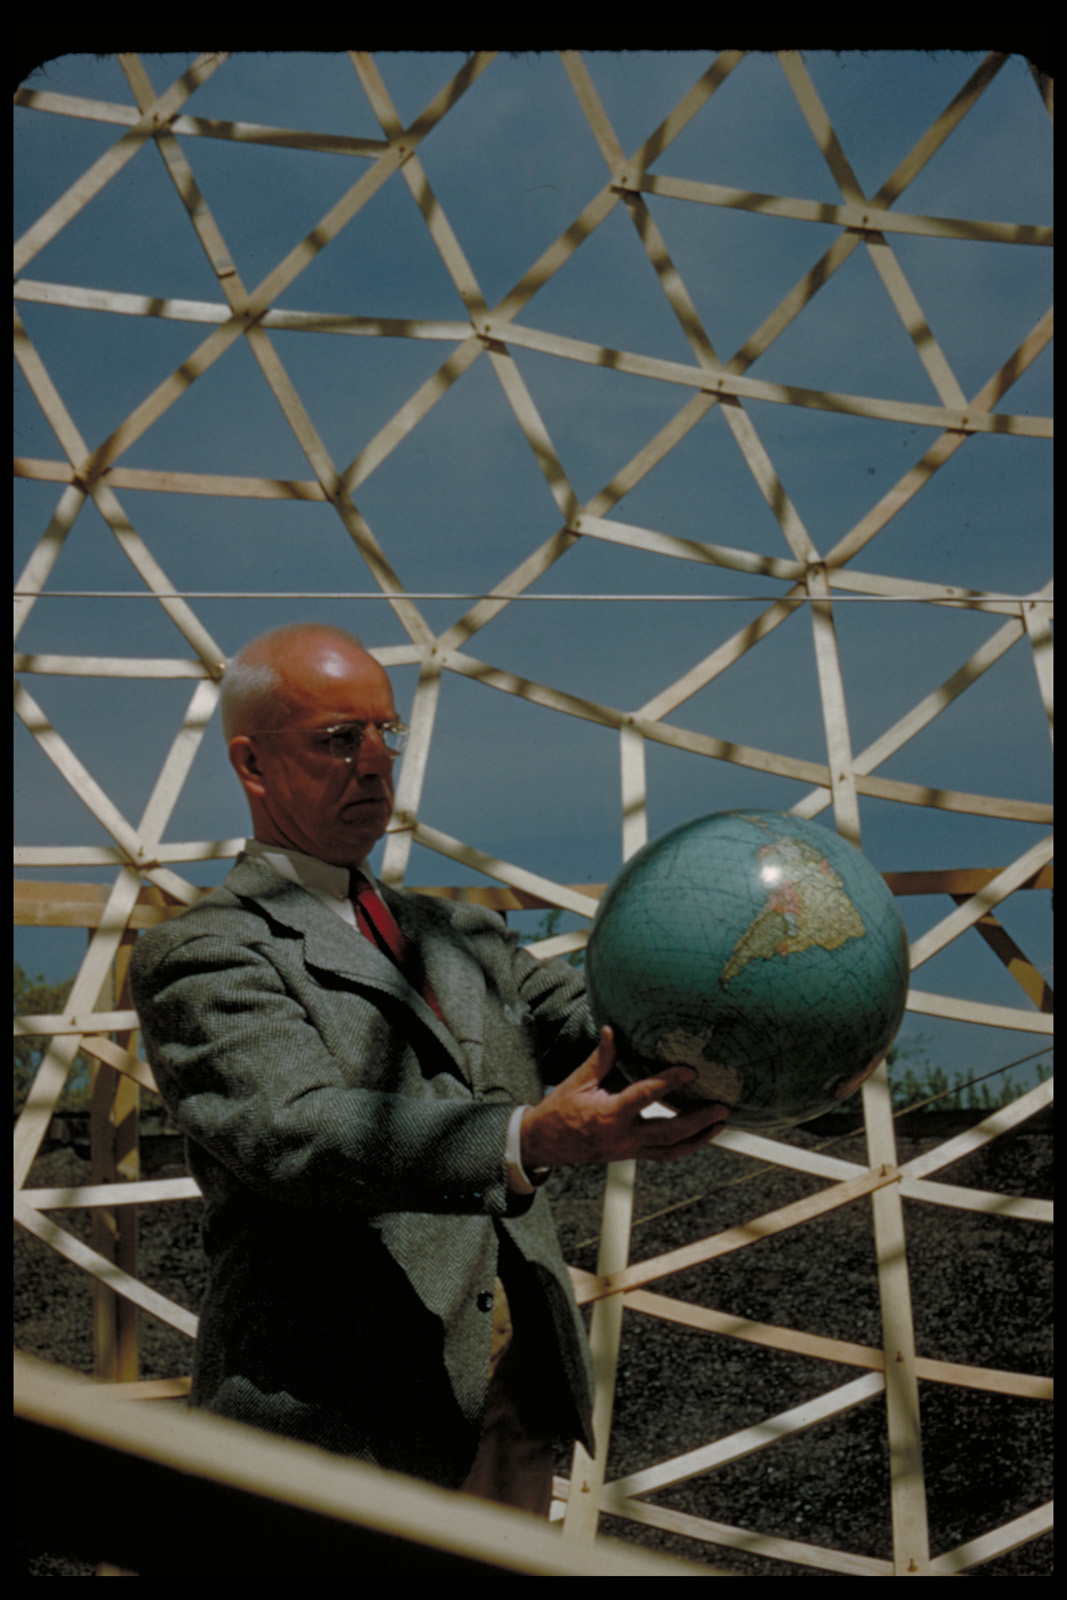 Images courtesy of the Estate of R. Buckminster Fuller. 